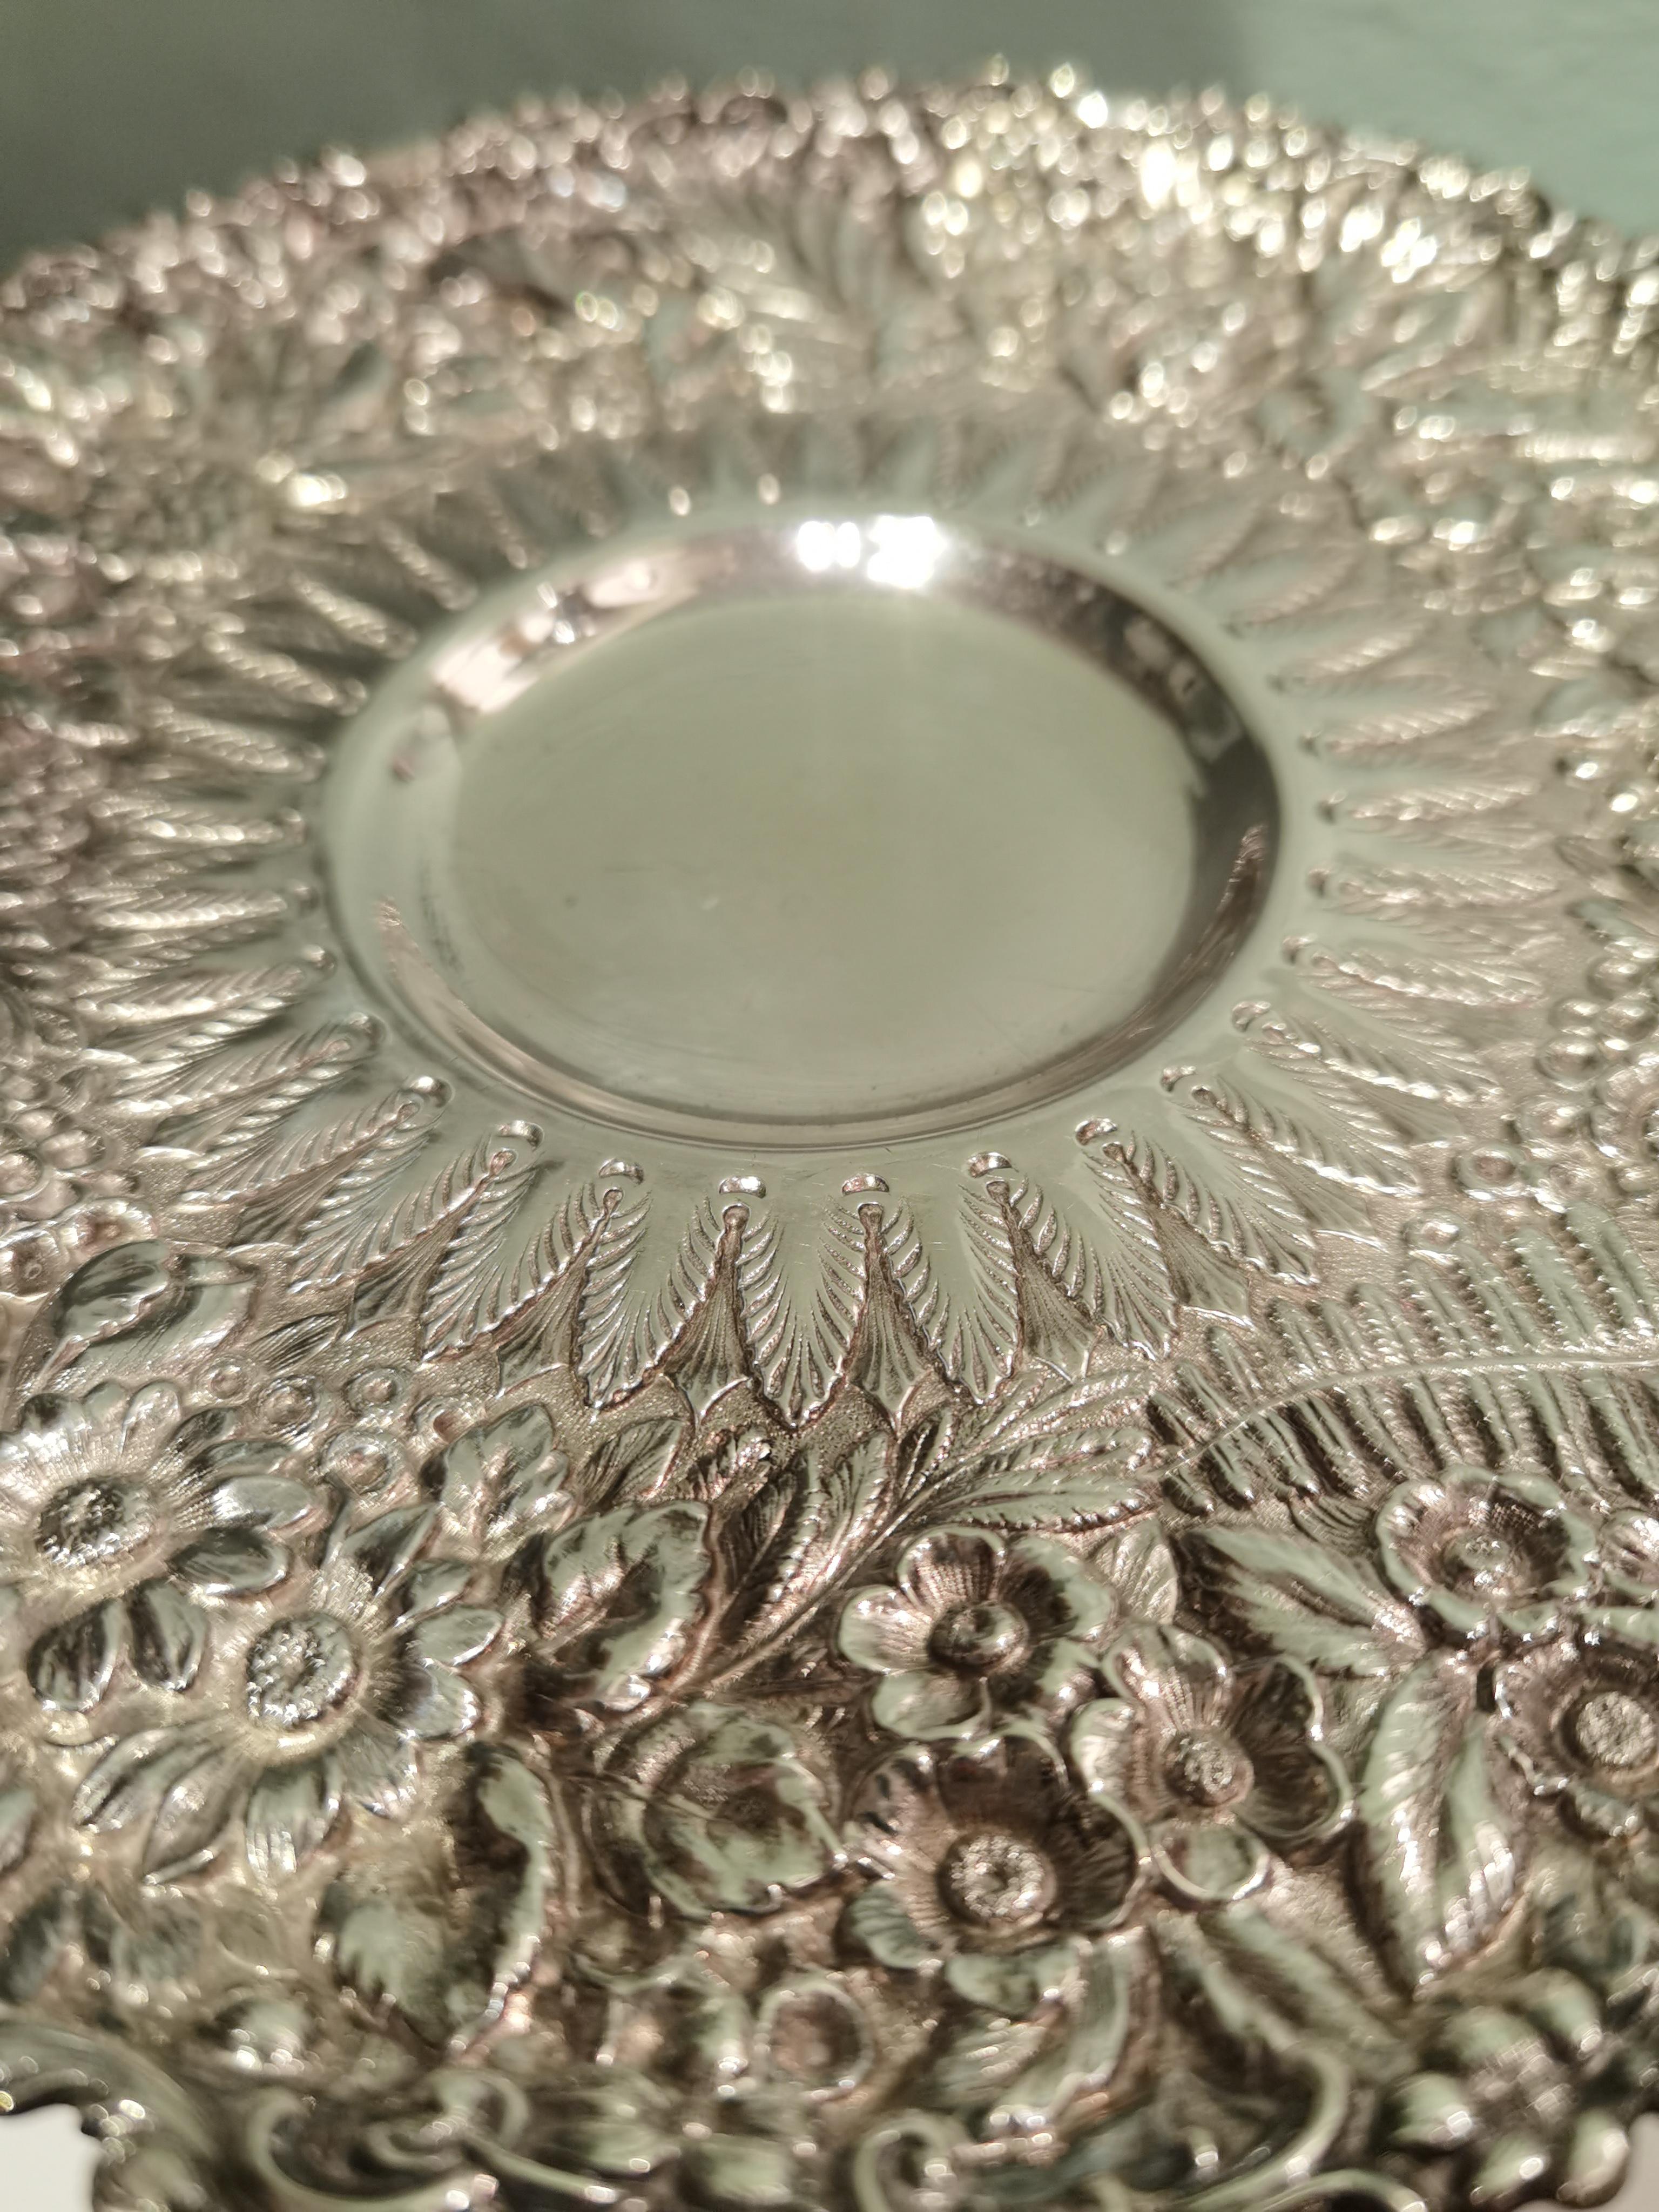 Bol de centre de table Art Nouveau de Tiffany en argent sterling. L'assiette et le support sont richement travaillés à la main et décorés de fruits, de feuilles et de fleurs.
Estampillé à l'intérieur de Tiffany avec le numéro de modèle B34. Ca 530